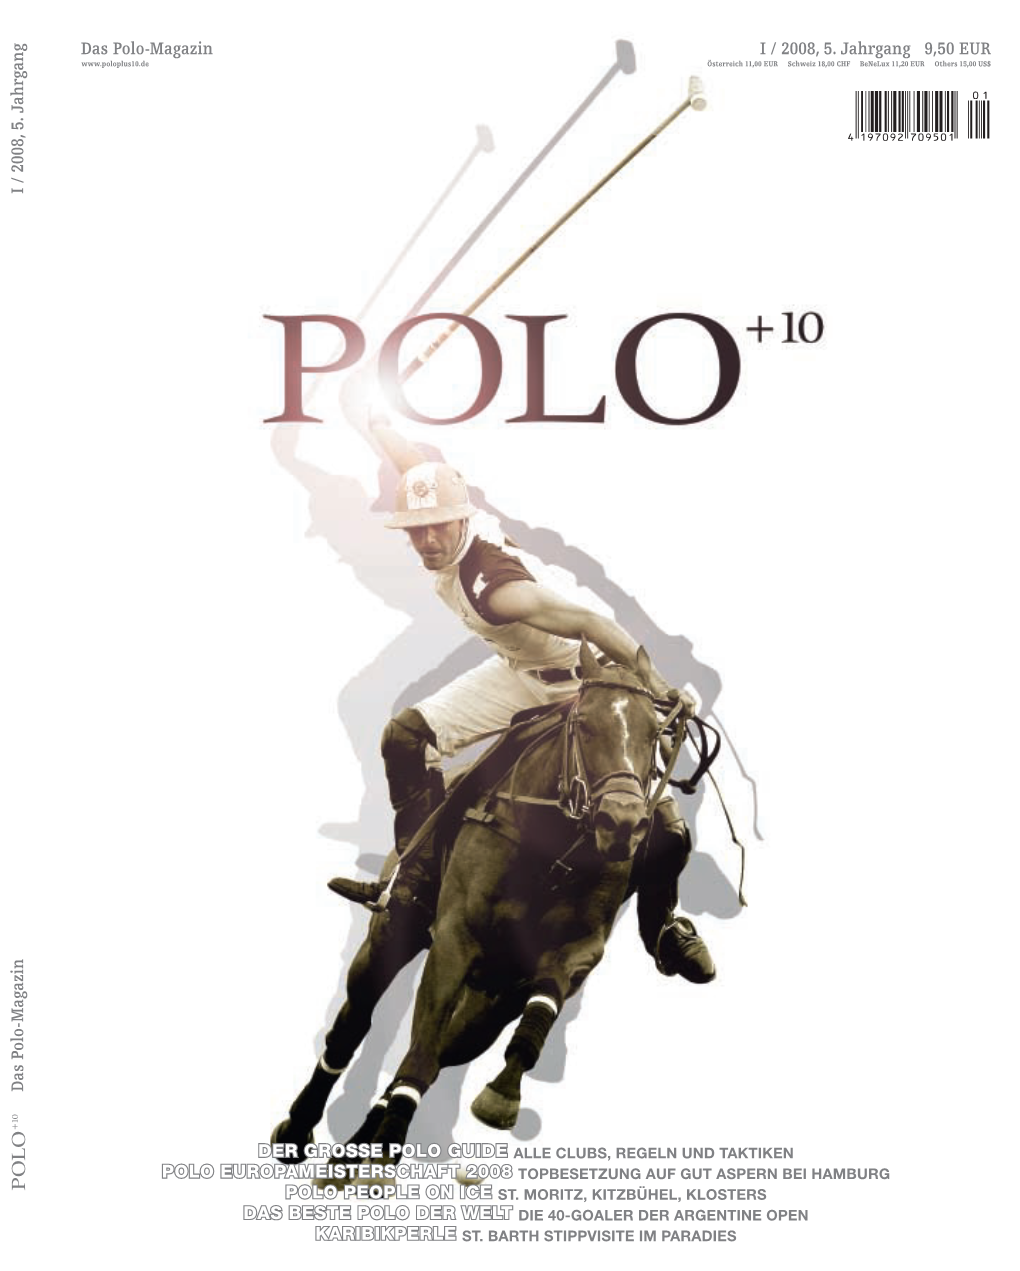 Segway Polo: Draufstellen, Losfahren – Und Polo Site Poloevent.De Hat Sich Viel Vorgenommen European Polotour